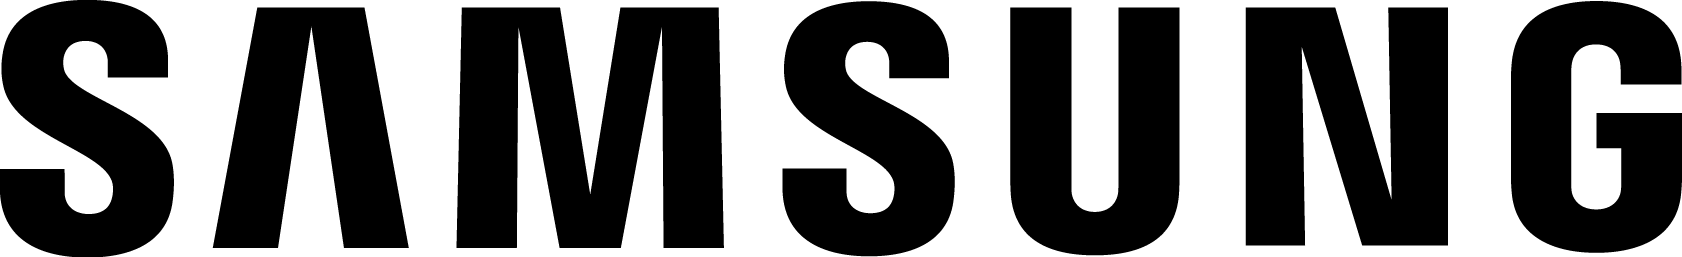 logo-samsung-smart.png